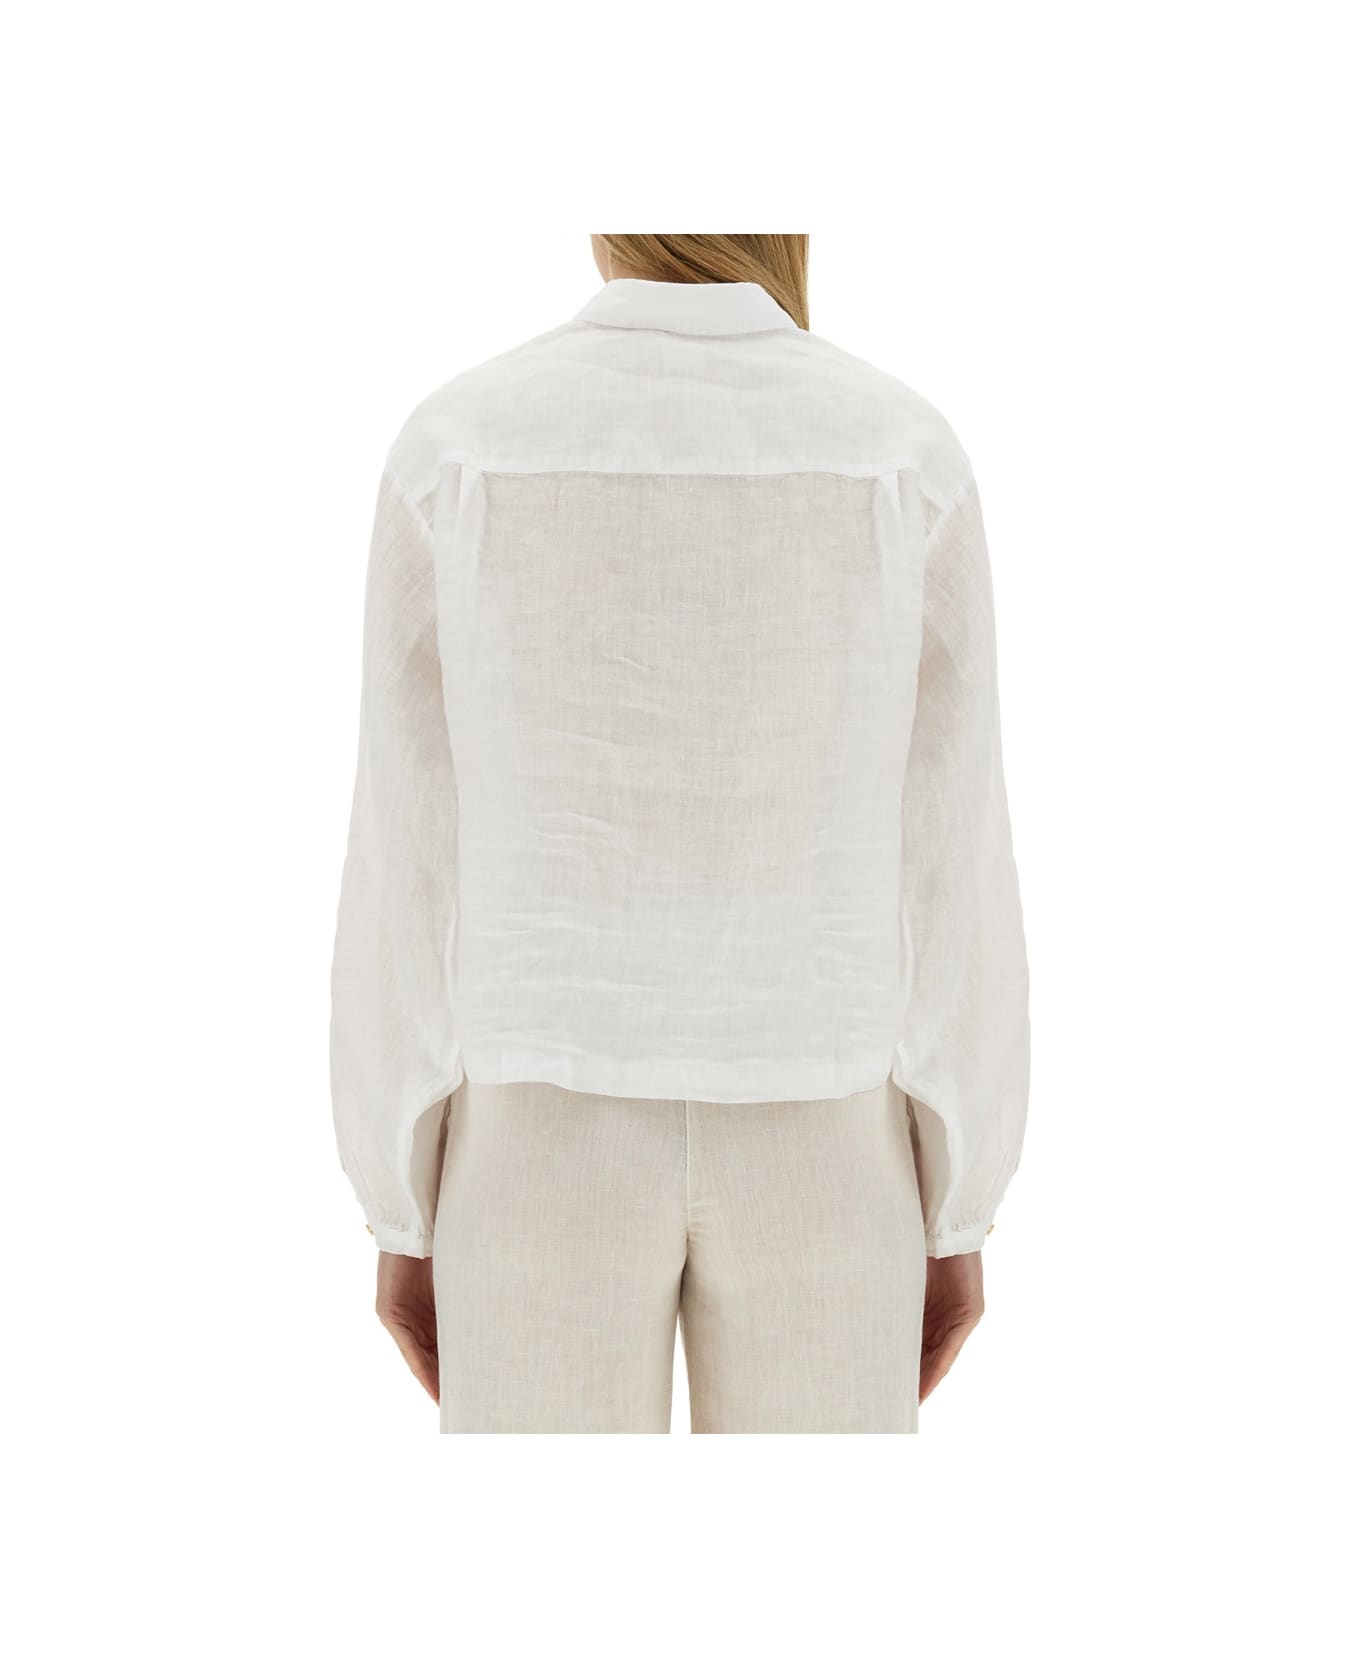 120% Lino Linen Shirt - WHITE